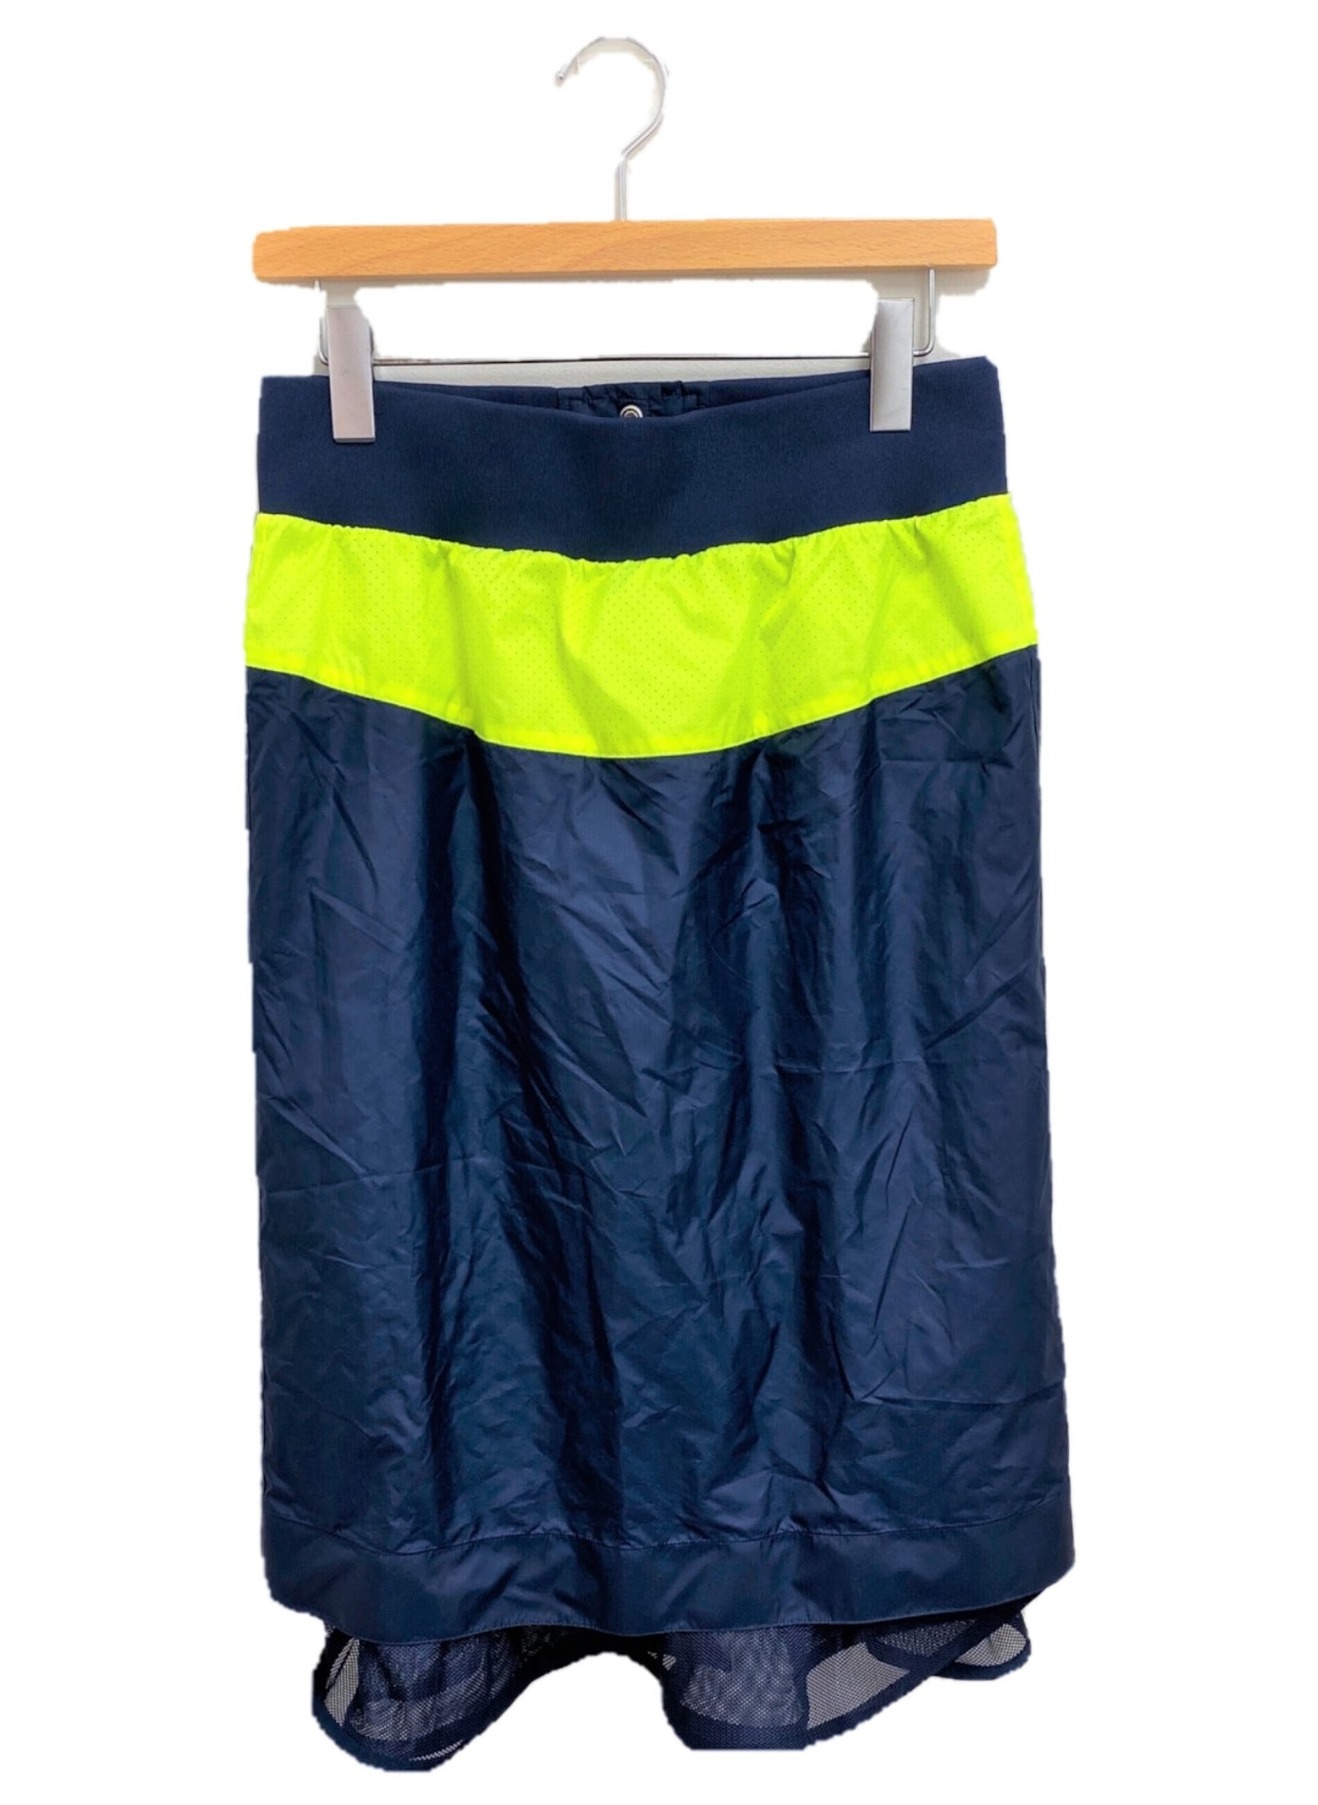 NIKE×sacai (ナイキ×サカイ) ウィンドランナースカート ネイビー サイズ:S